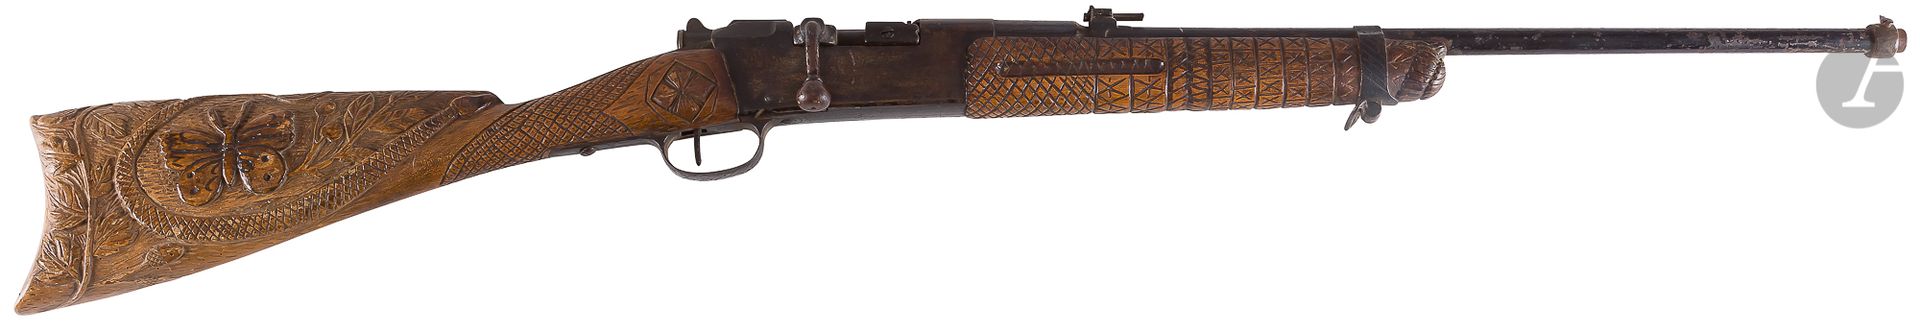 Null Fusil Lebel modèle 1886 à verrou, calibre 8 mm, modifié pour la chasse.

Ca&hellip;